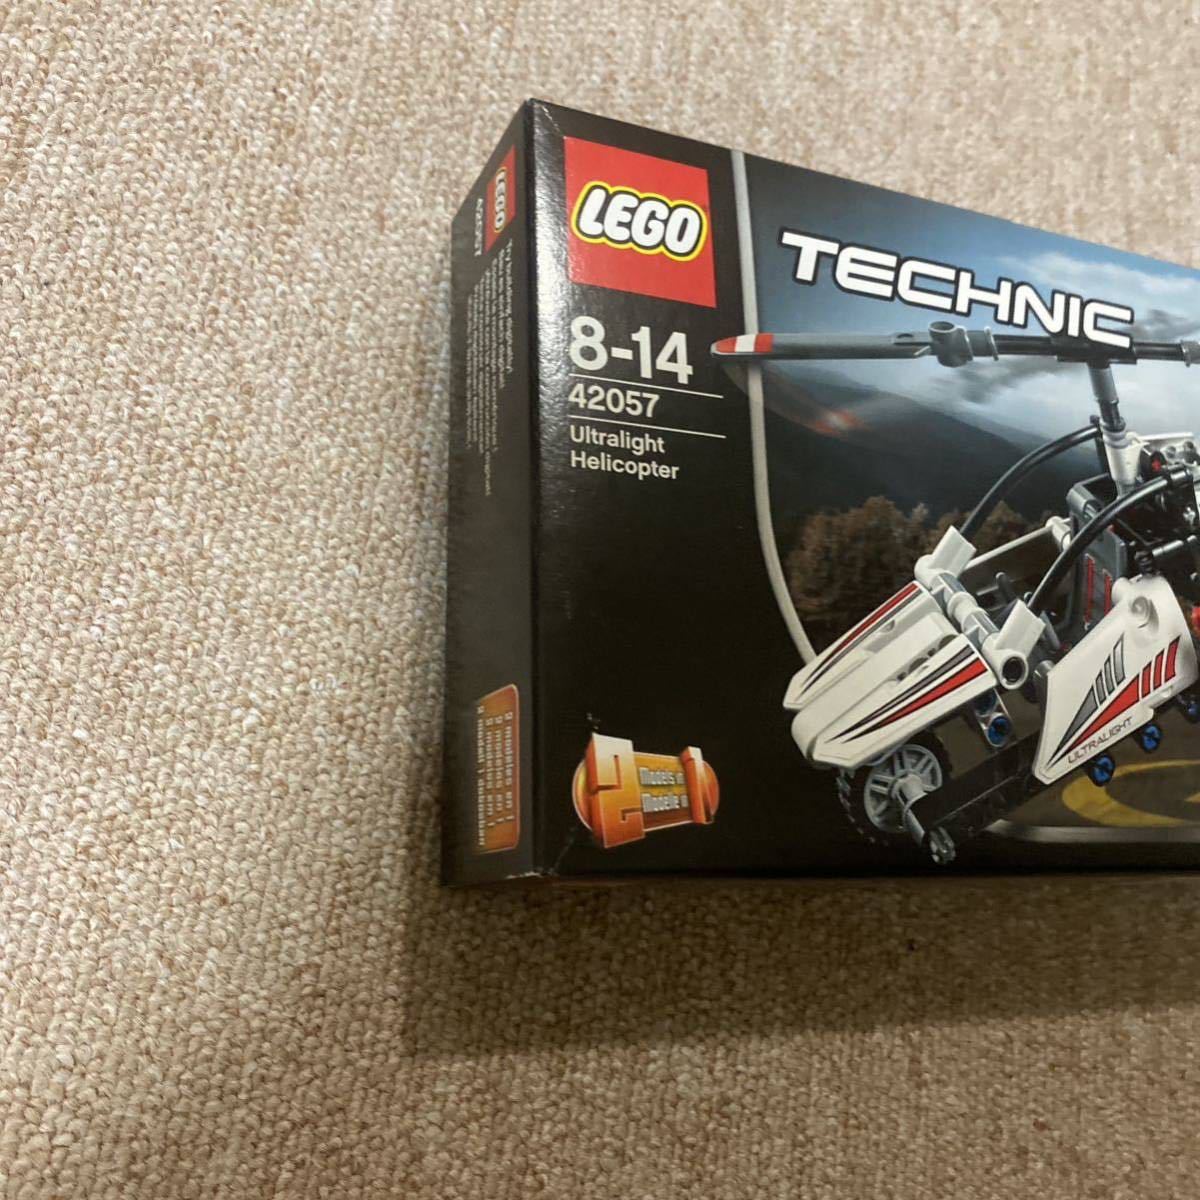  Lego (LEGO) technique super light weight helicopter 42057hiko-ki worn hiko-ki